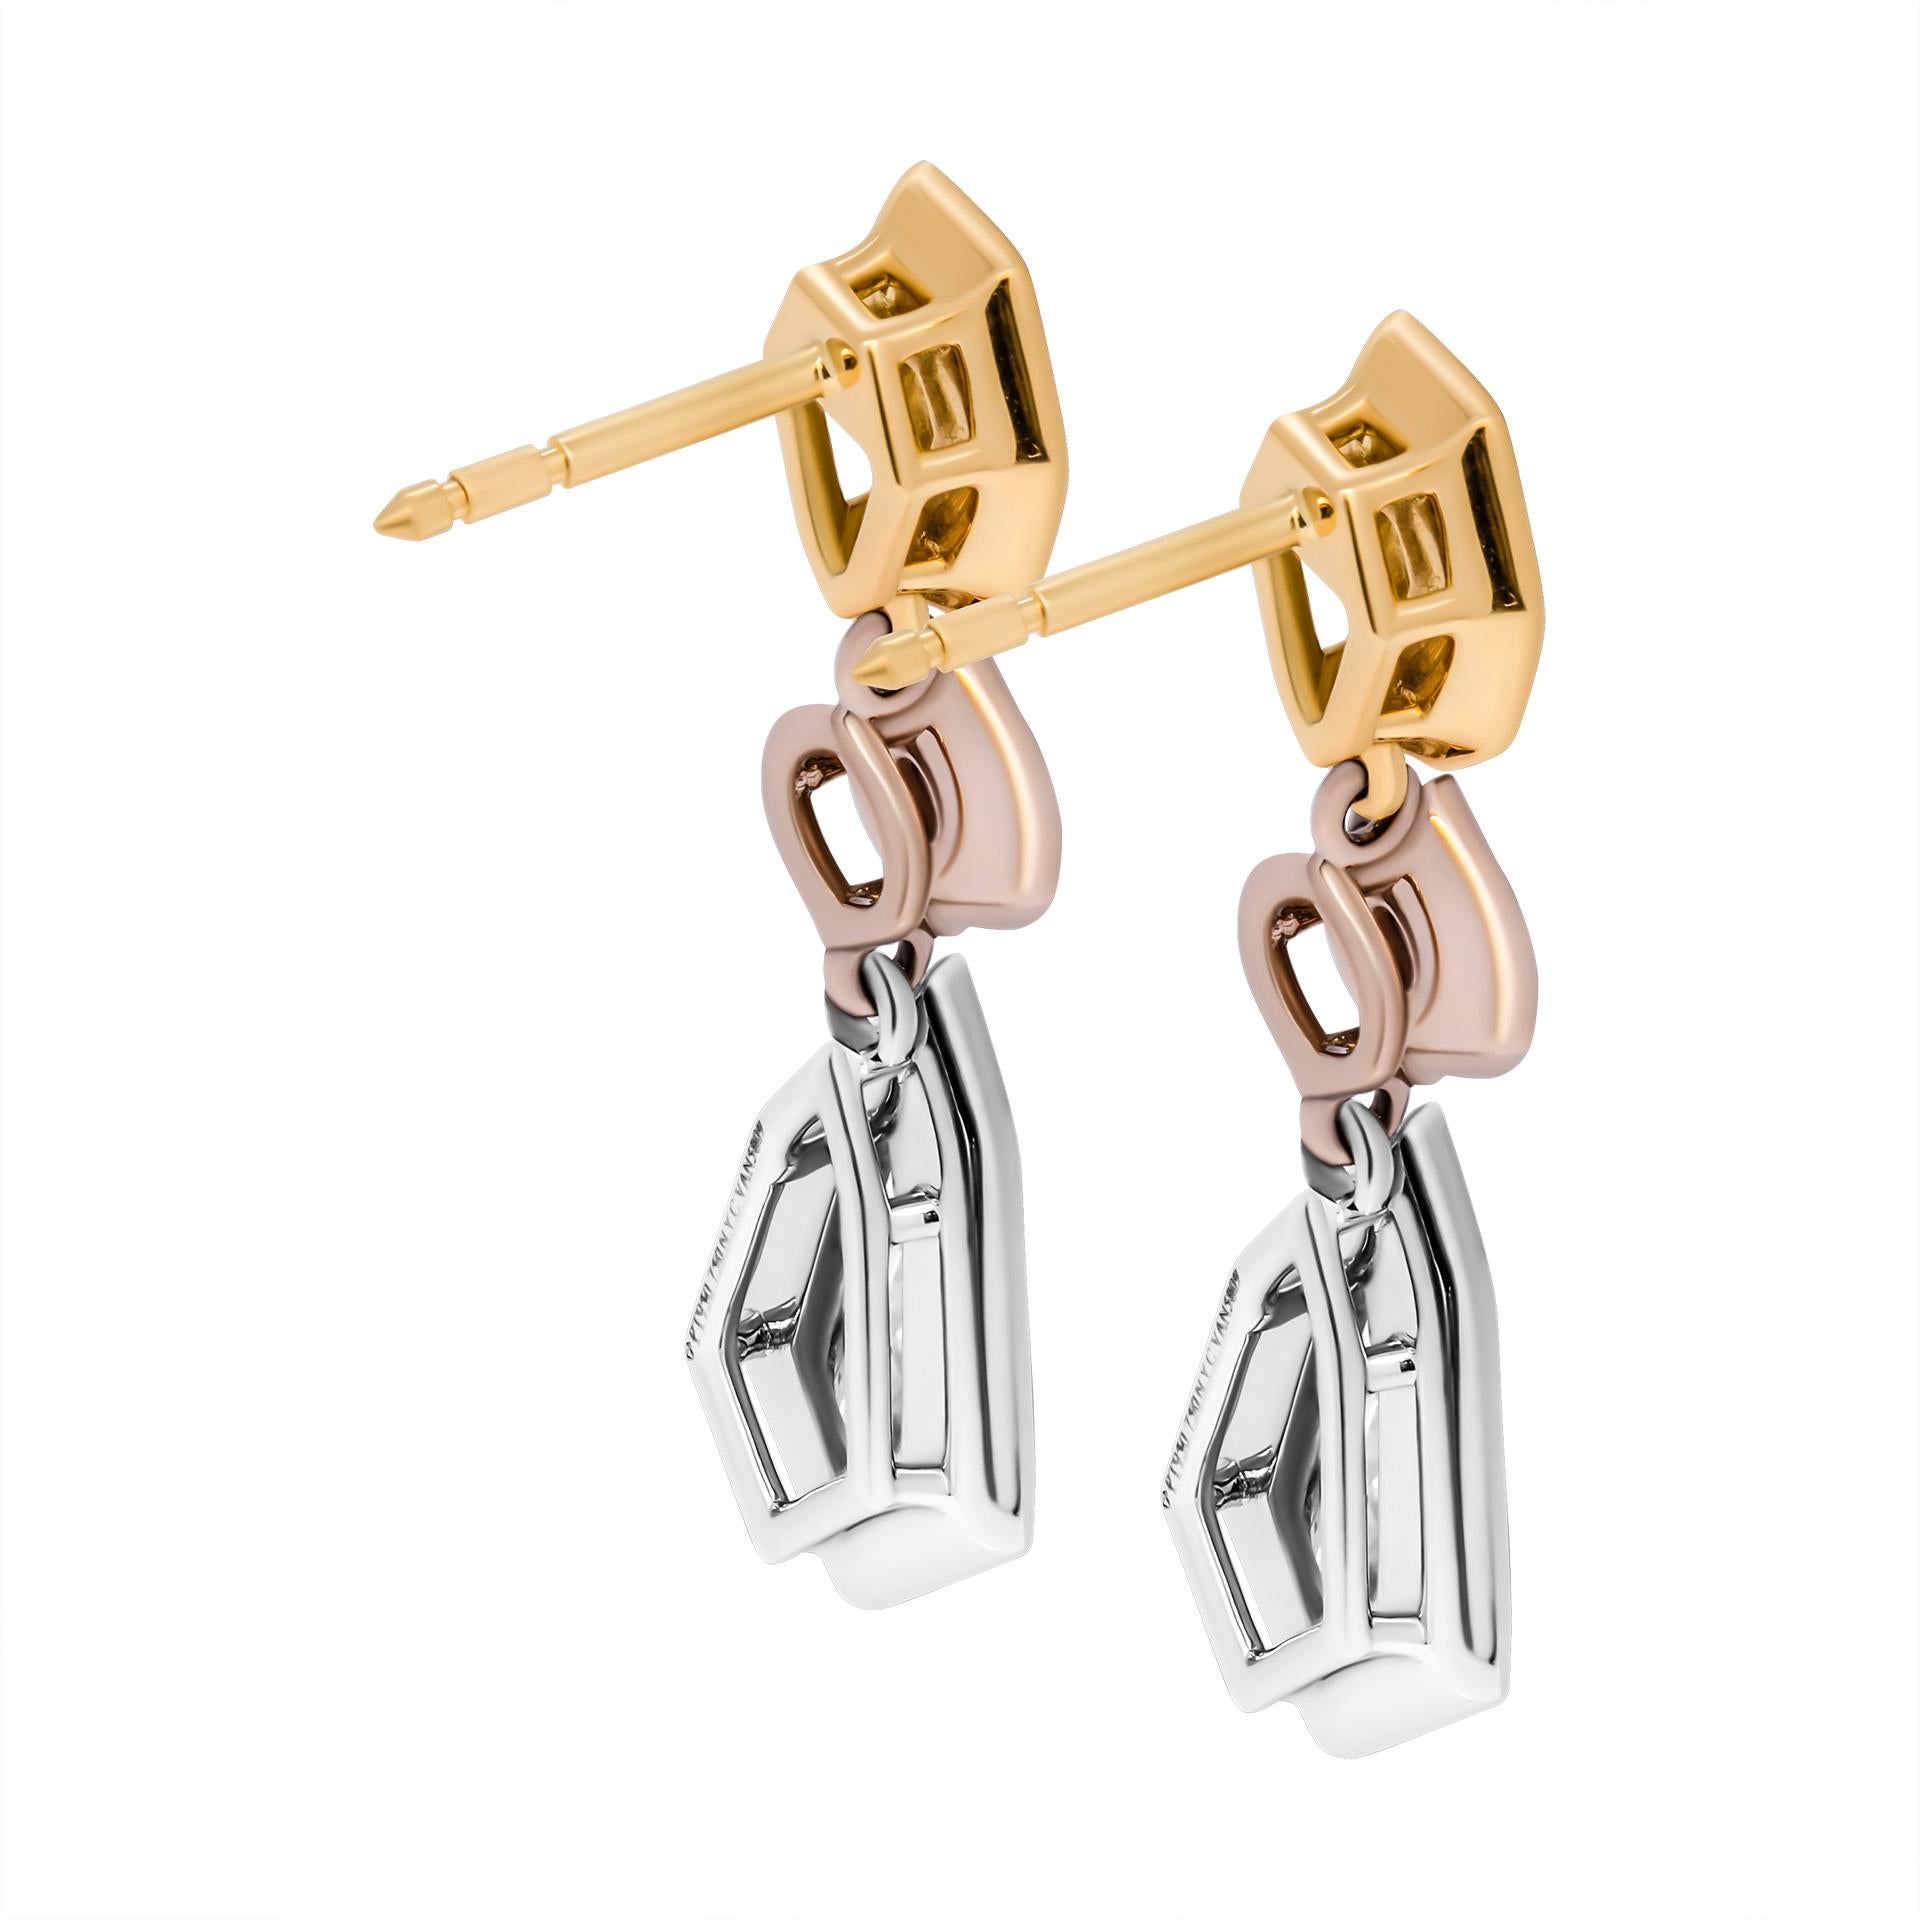 Kite Cut GIA Certified Fancy Color Diamond Earrings  For Sale